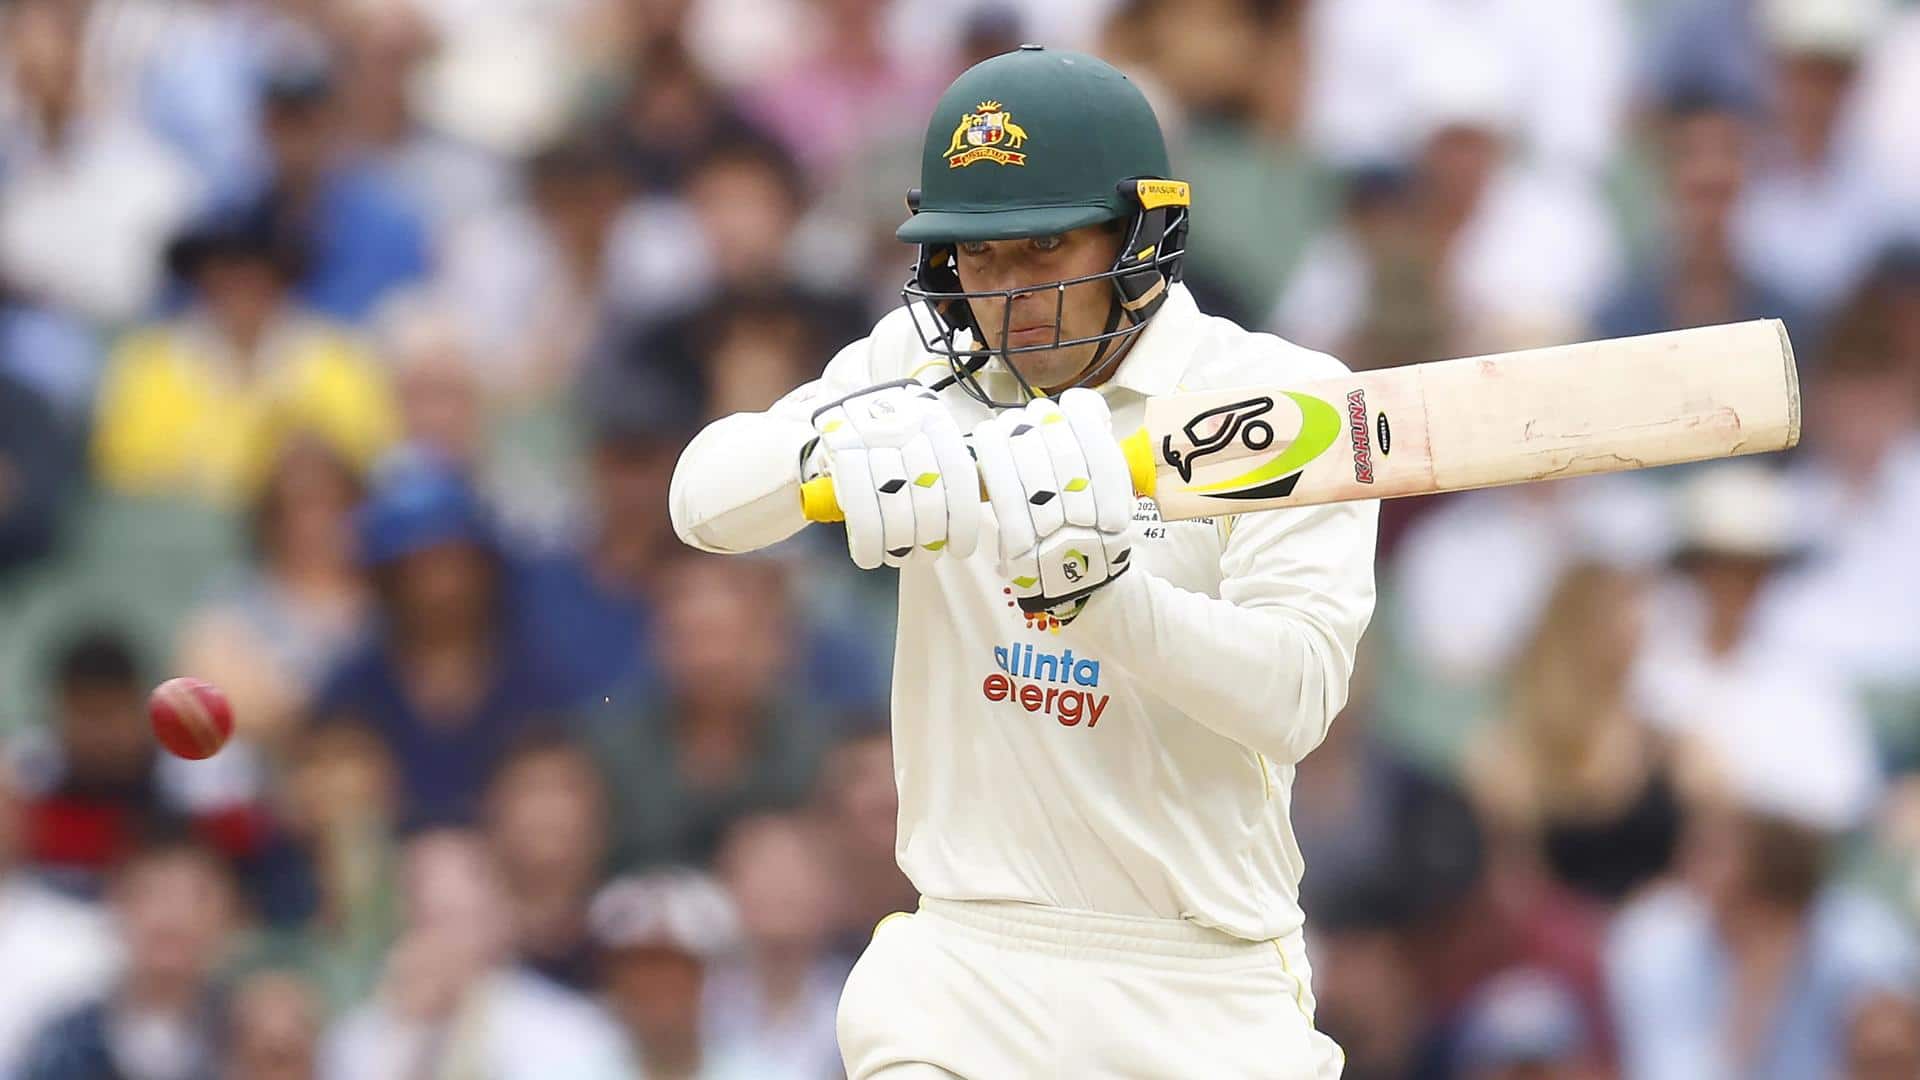 AUS vs SA, Alex Carey smashes maiden Test ton: Stats